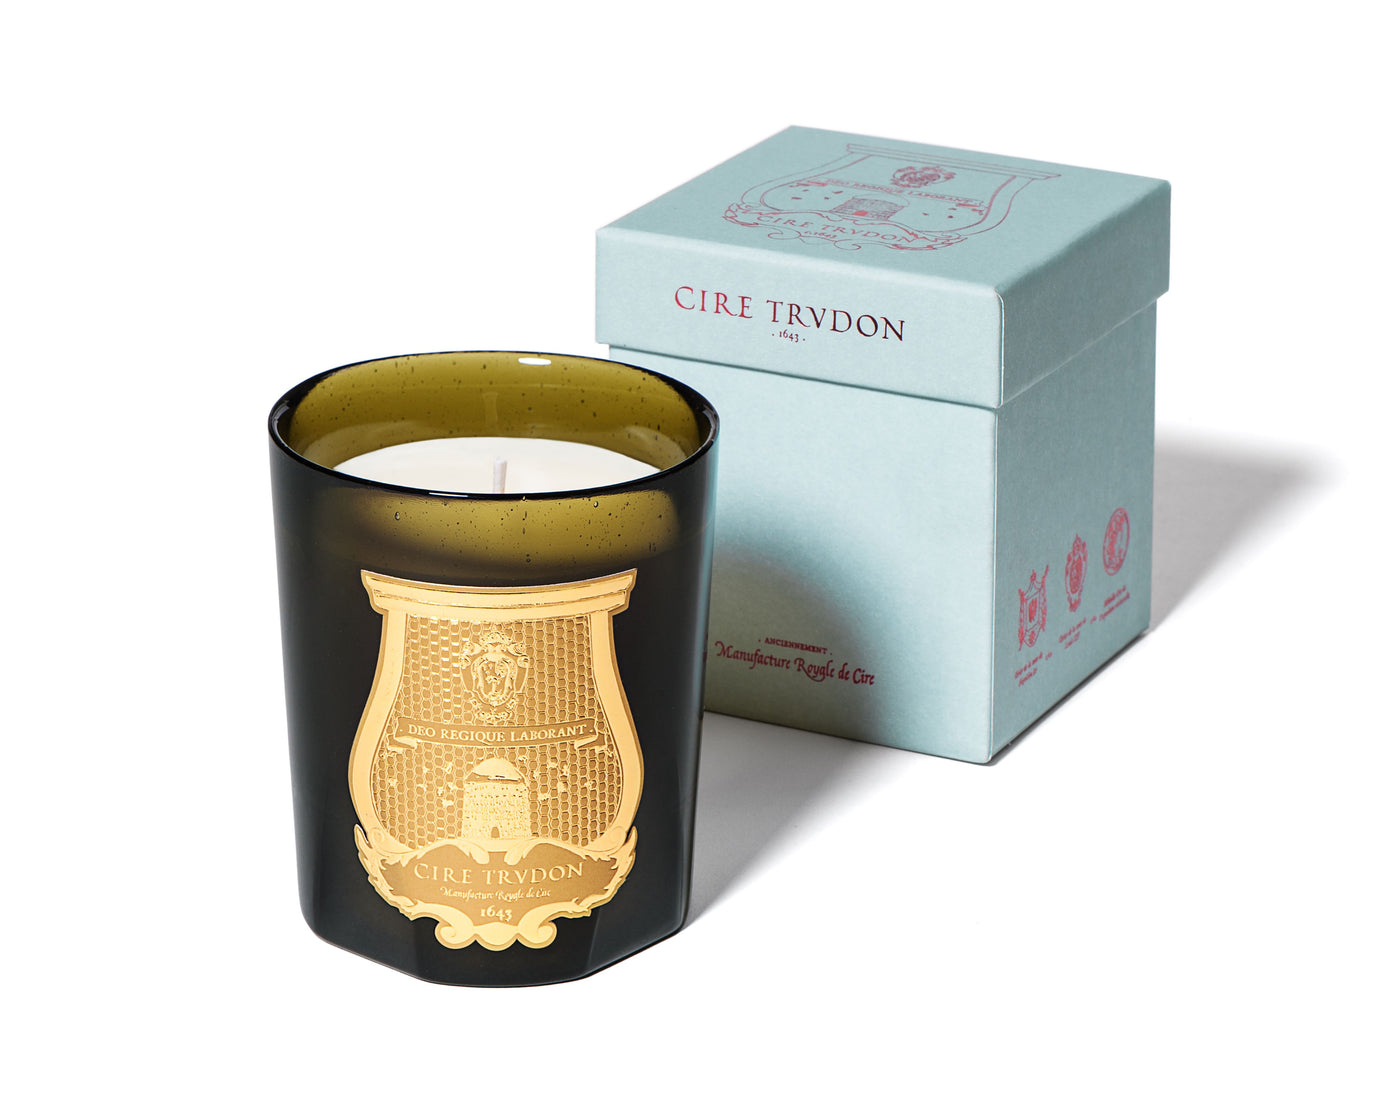 Trudon - Abd el Kader (Moroccan Mint Tea) Candle